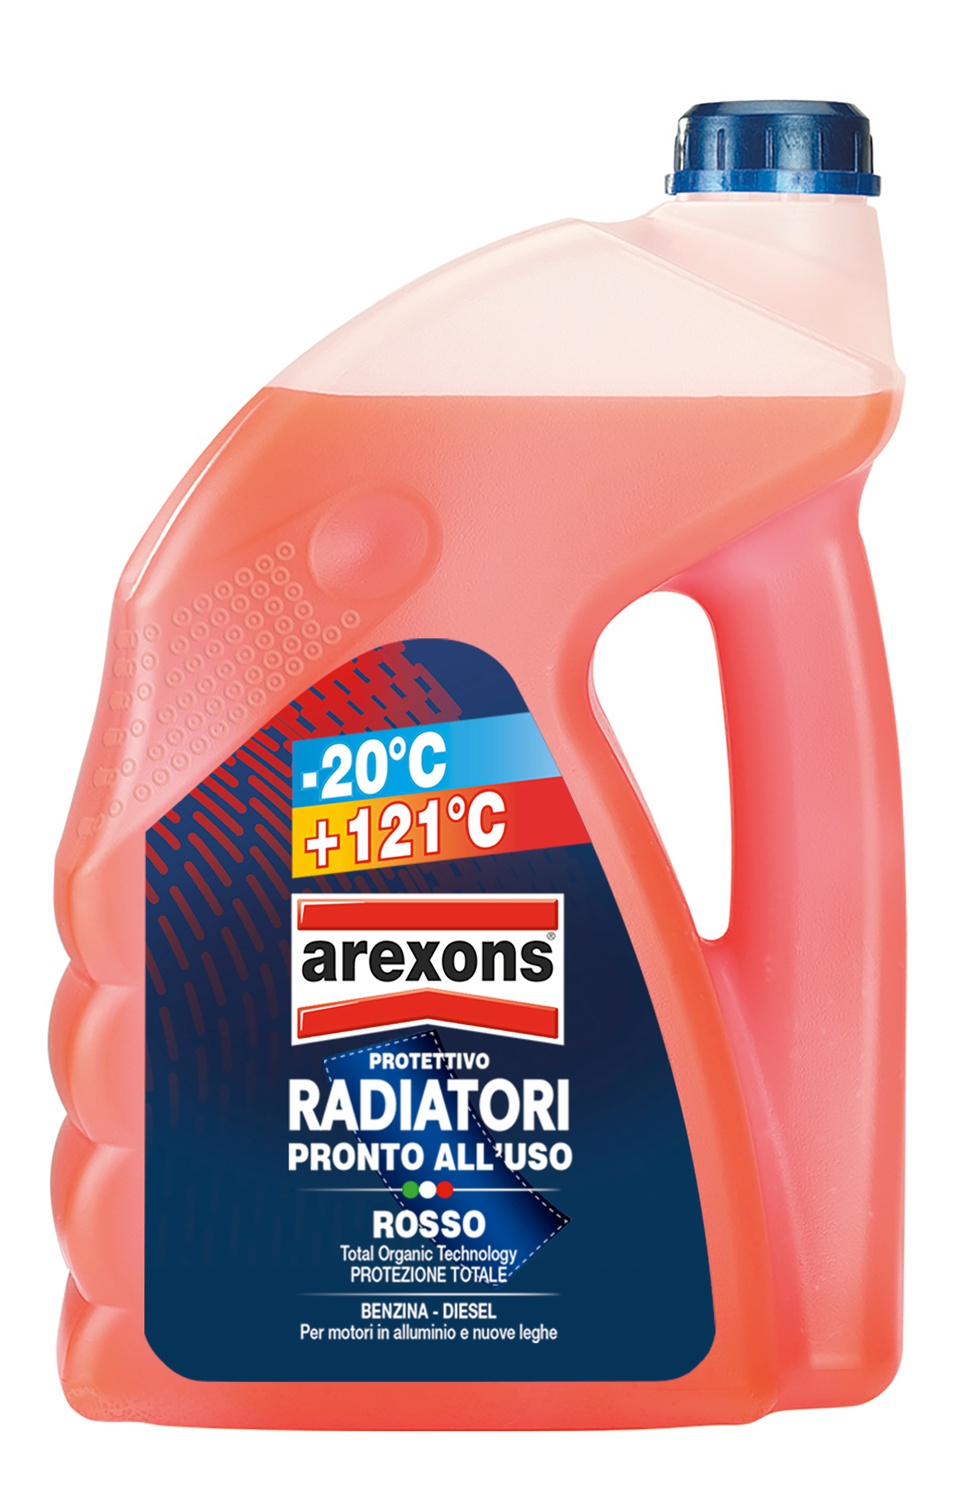 Protettivo radiatori rosso -20°c. 2l - Arexons